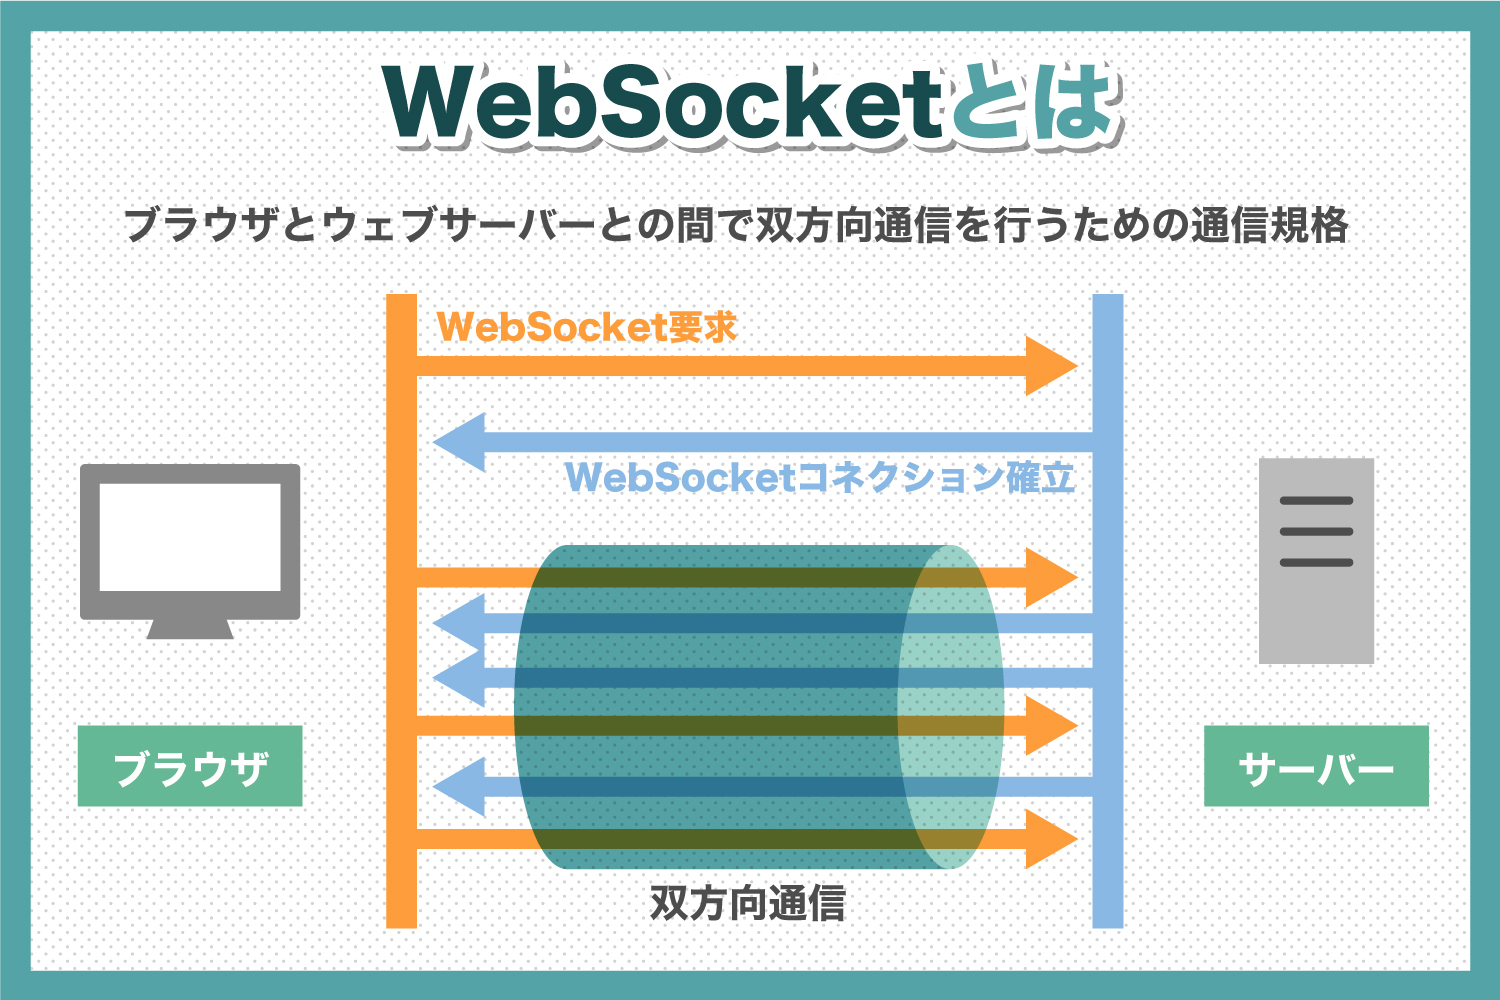 WebSocketとは？WebSocketについて詳しく解説します